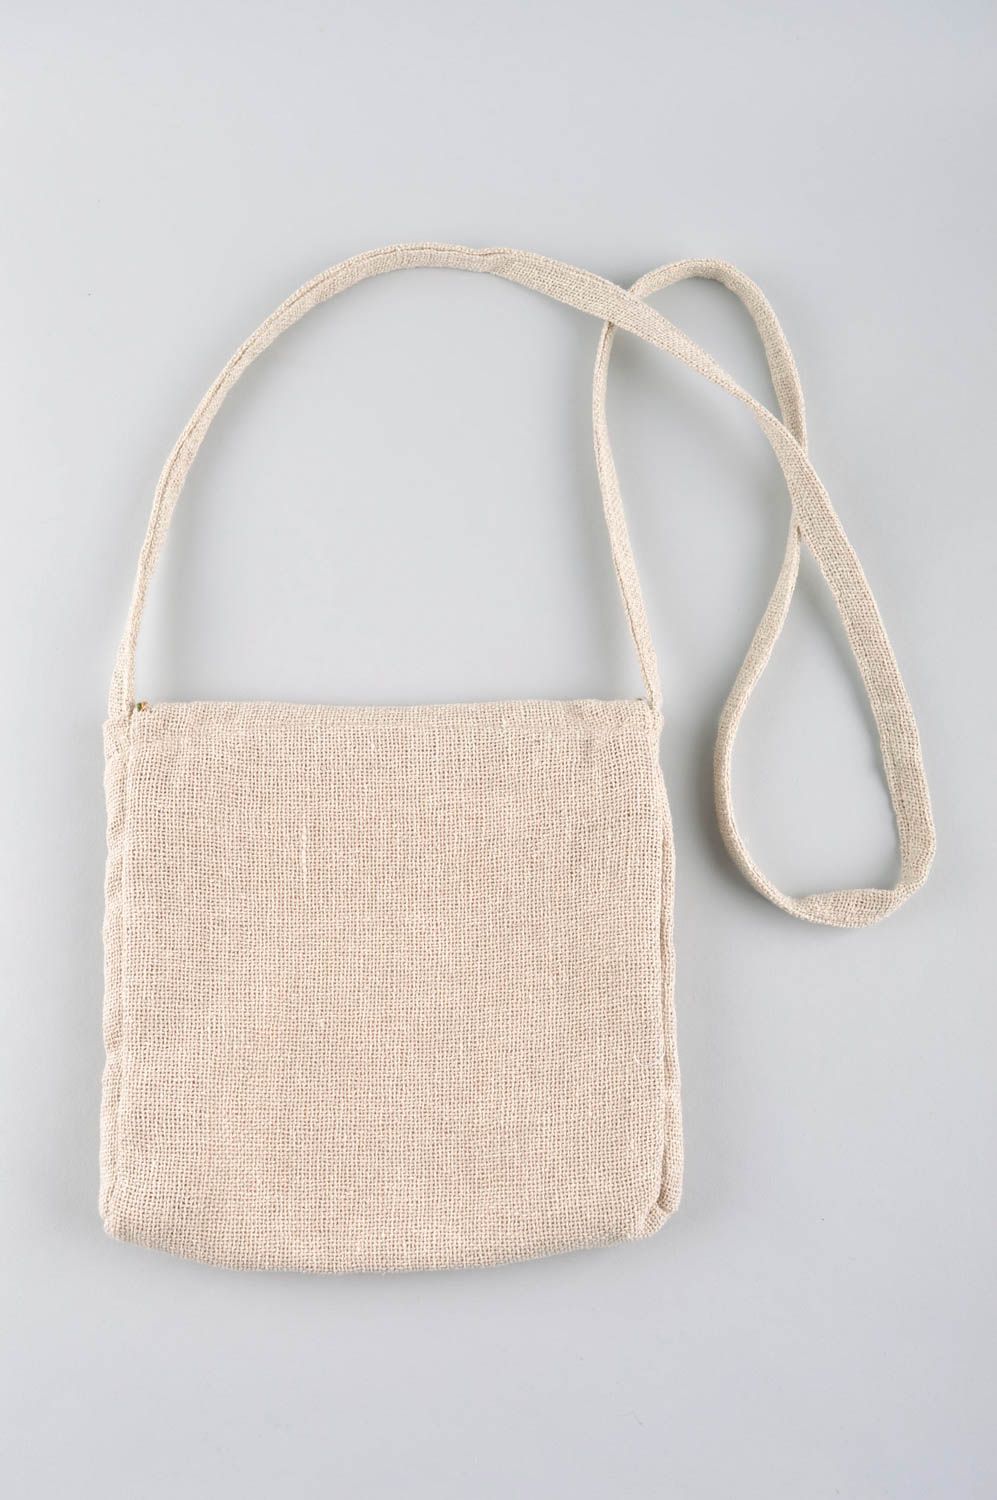 Сумка ручной работы белая сумка через плечо с вышивкой текстильная сумка фото 3